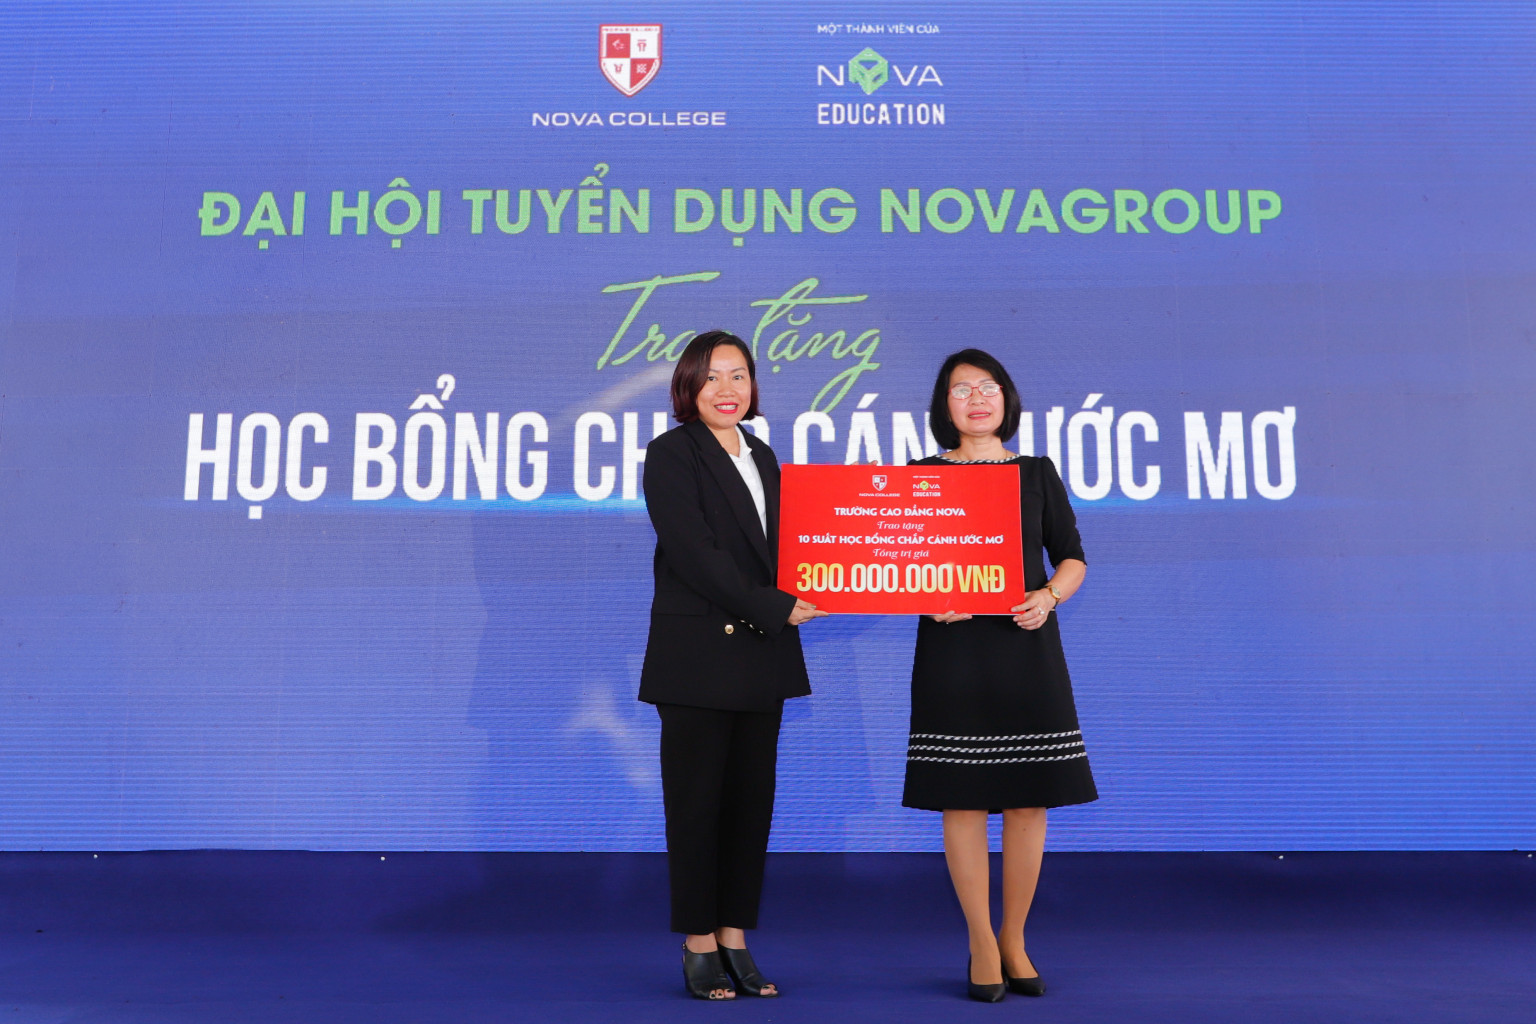 Thạc sĩ Nguyễn Thị Ngọc Quyên (trái), Hiệu trưởng trường cao đẳng Nova trao tặng học bổng Chắp cánh ước mơ cho lãnh đạo địa phương. 